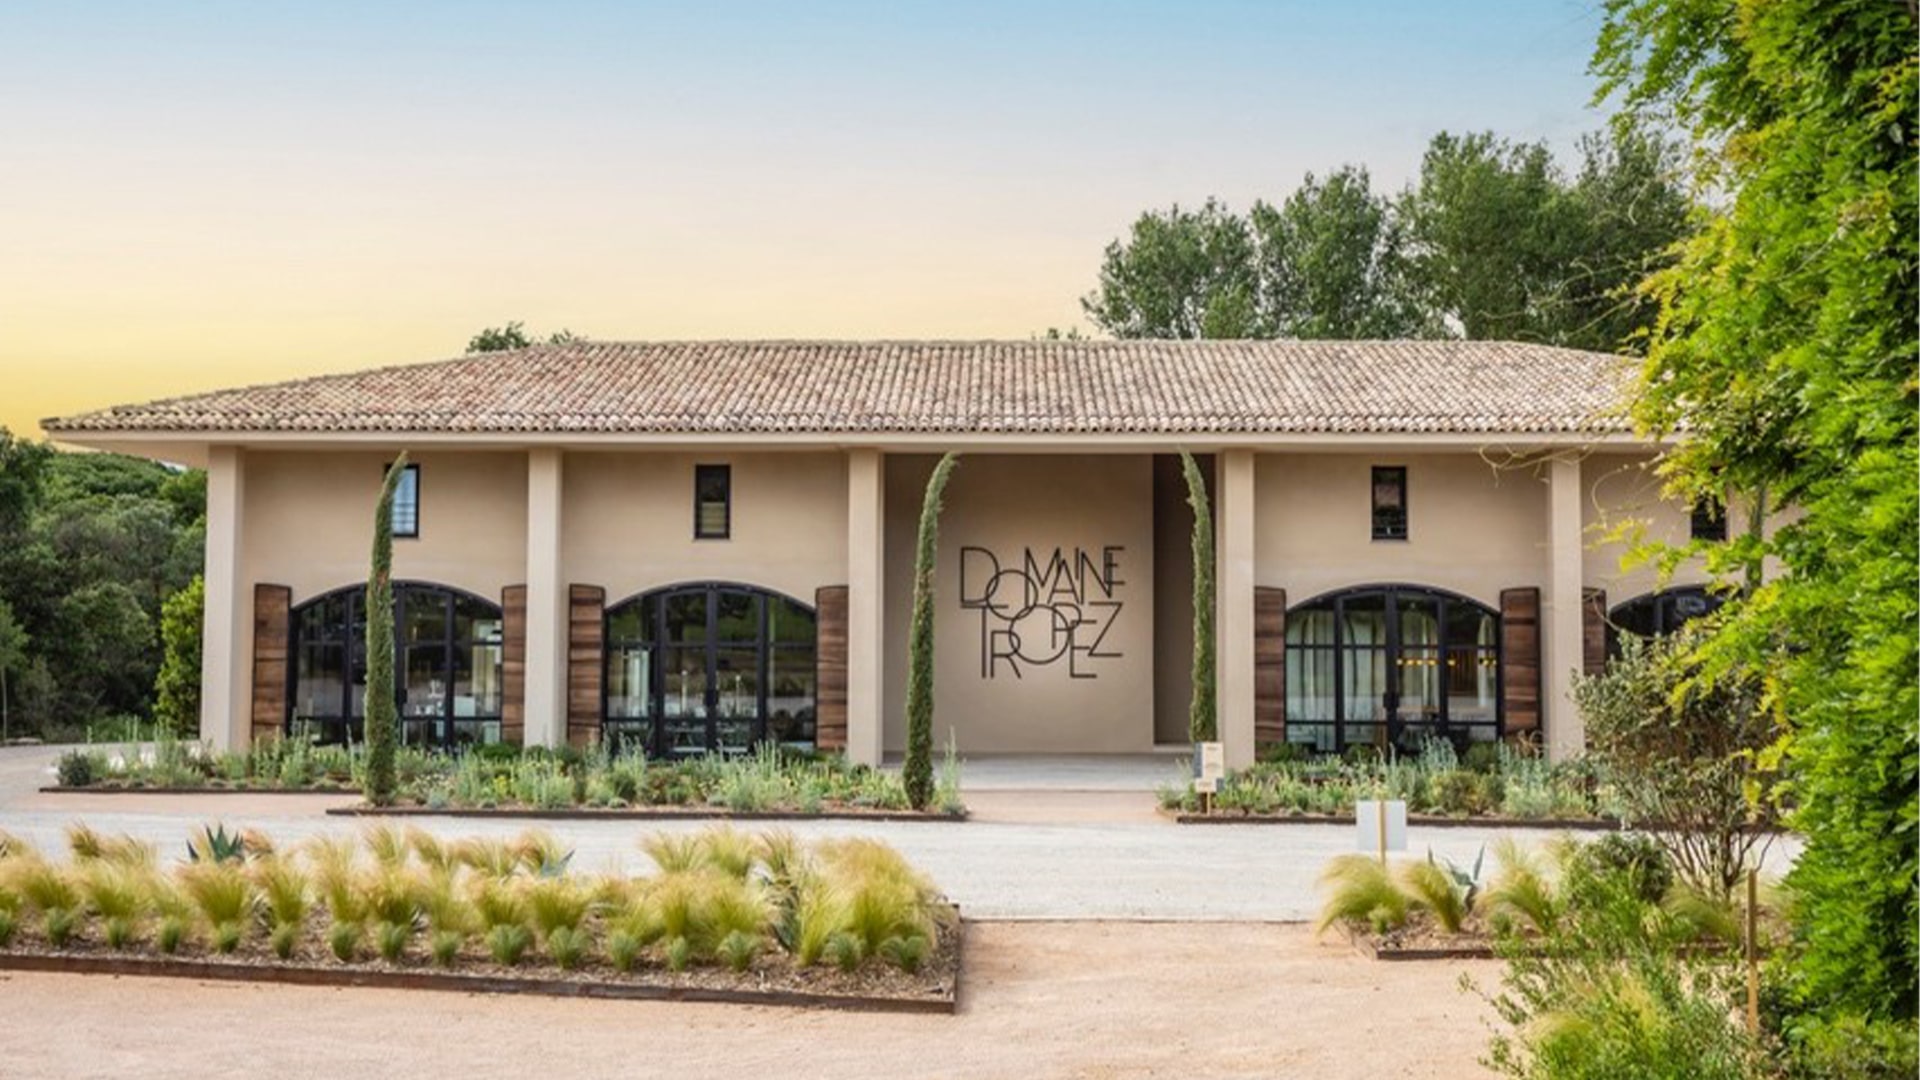 Agence Boris Folli - Architecture et maîtrise d'oeuvre - Saint-Tropez - Conception et réalisation d'un domaine viticole à Saint-Tropez